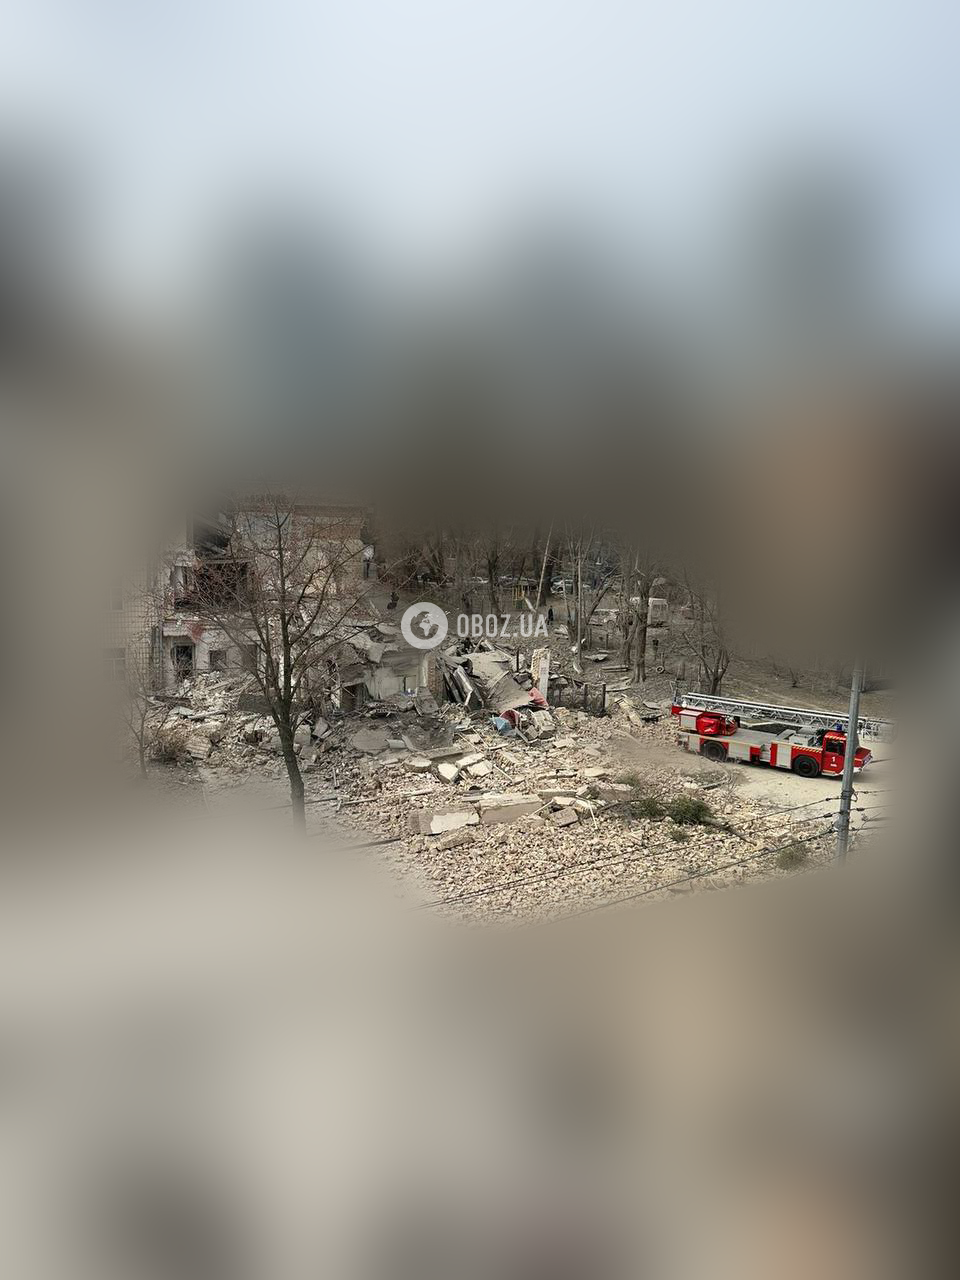 Eksplozje miały miejsce w Kijowie podczas alarmu przeciwlotniczego, powodując szkody i obrażenia. Zdjęcie